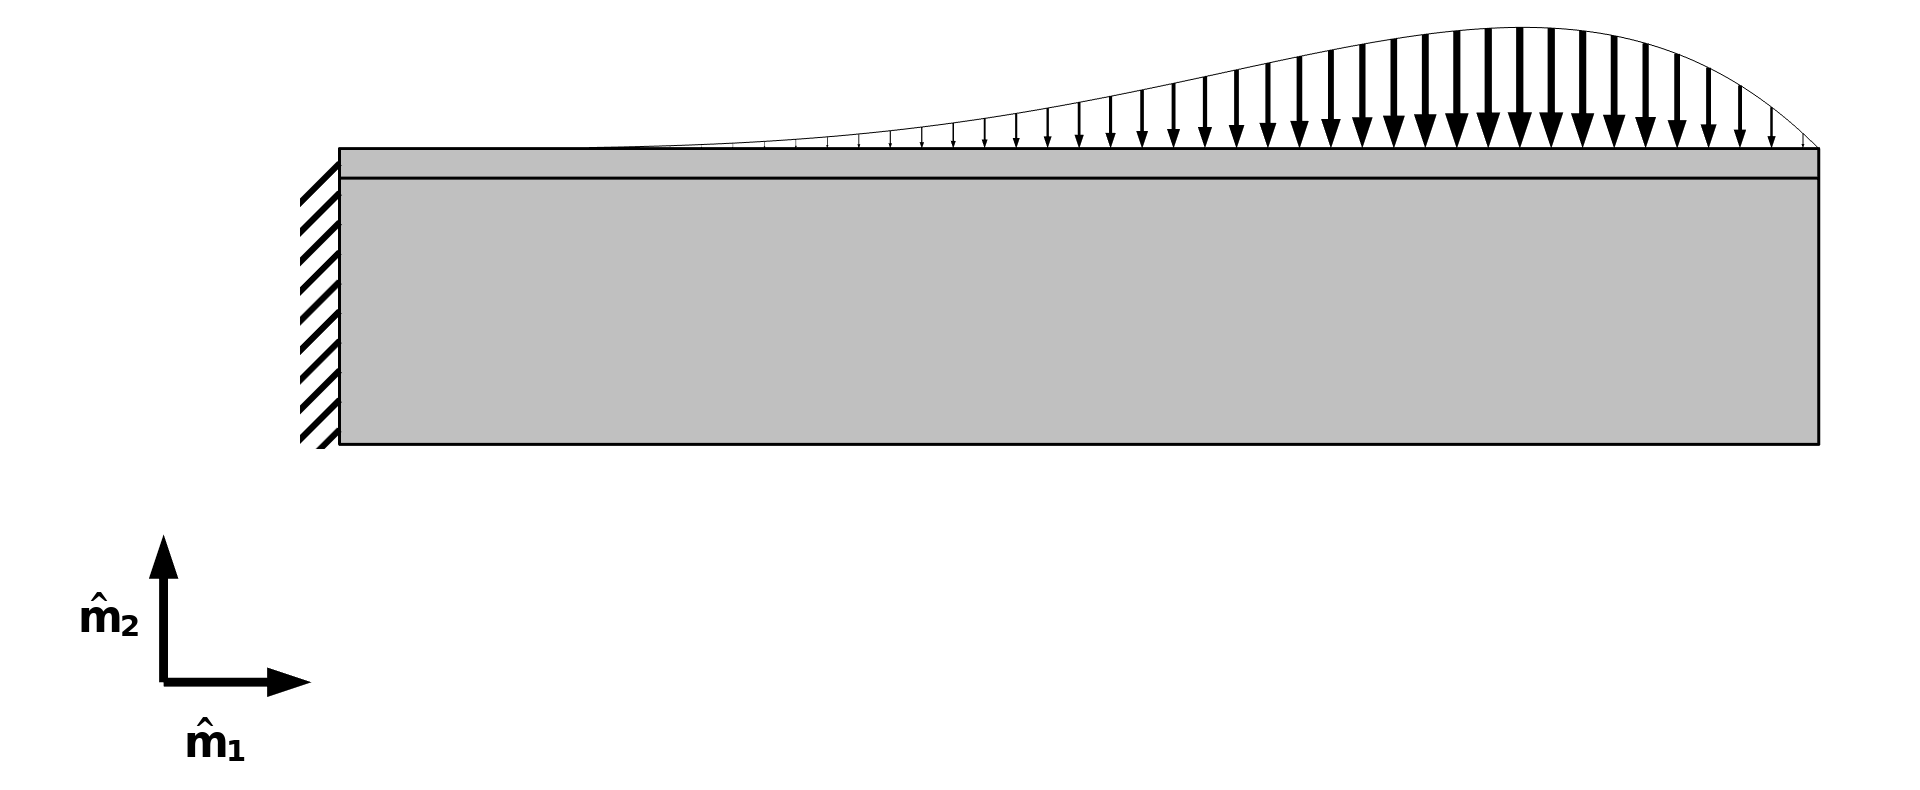 一个模型，其中左端是，顶部，顶部边界分布载荷。载荷